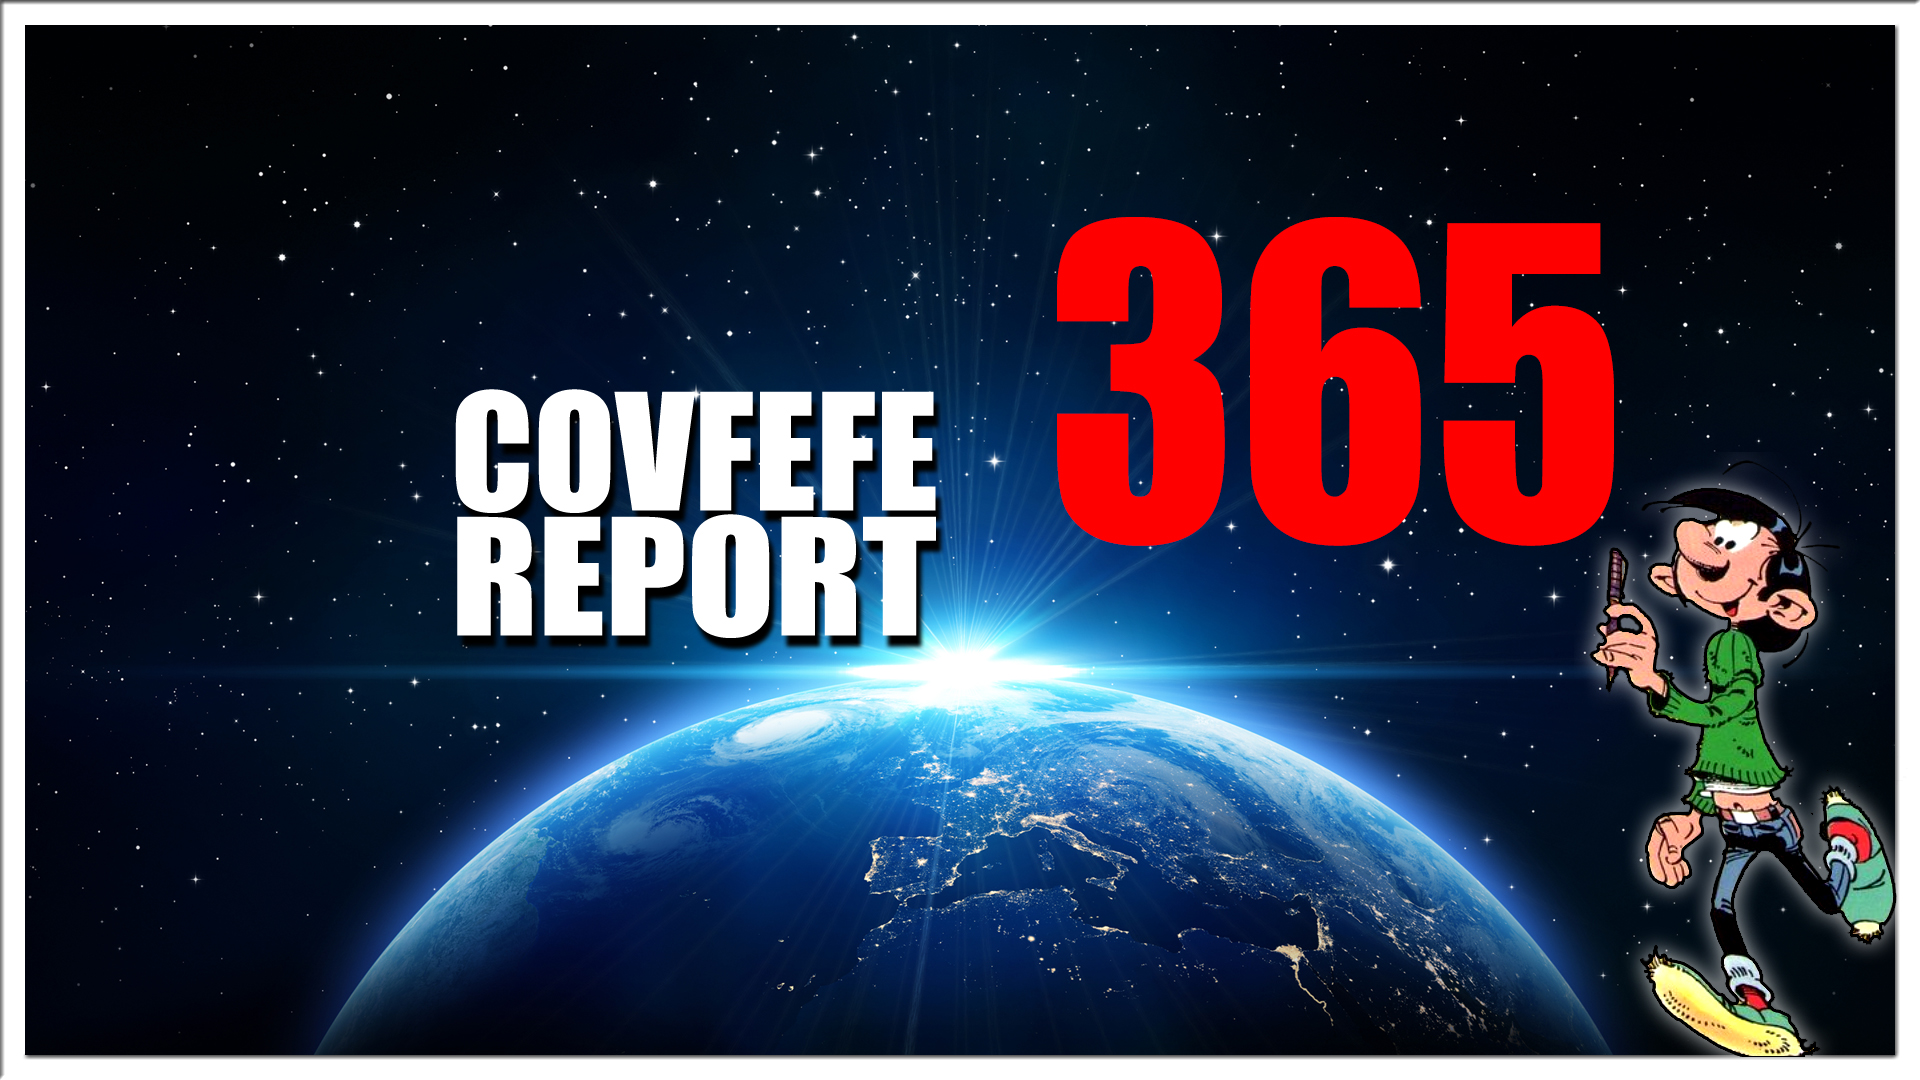 Covfefe Report 365. Trump en Pence gaan door, It's Time, Belastingdienst is immuun